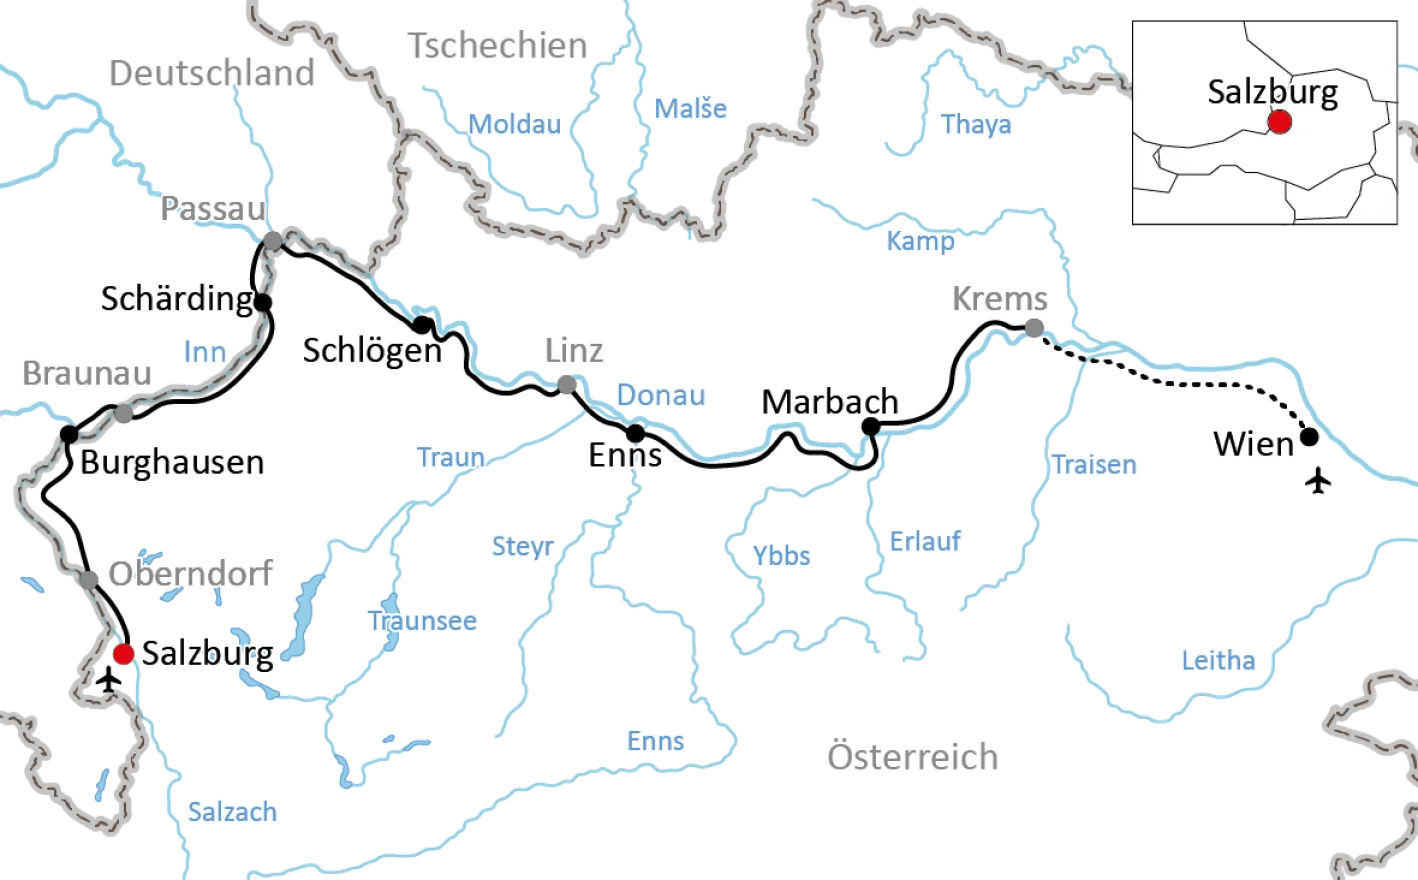 Cycle tour through Austria from Salzburg to Vienna